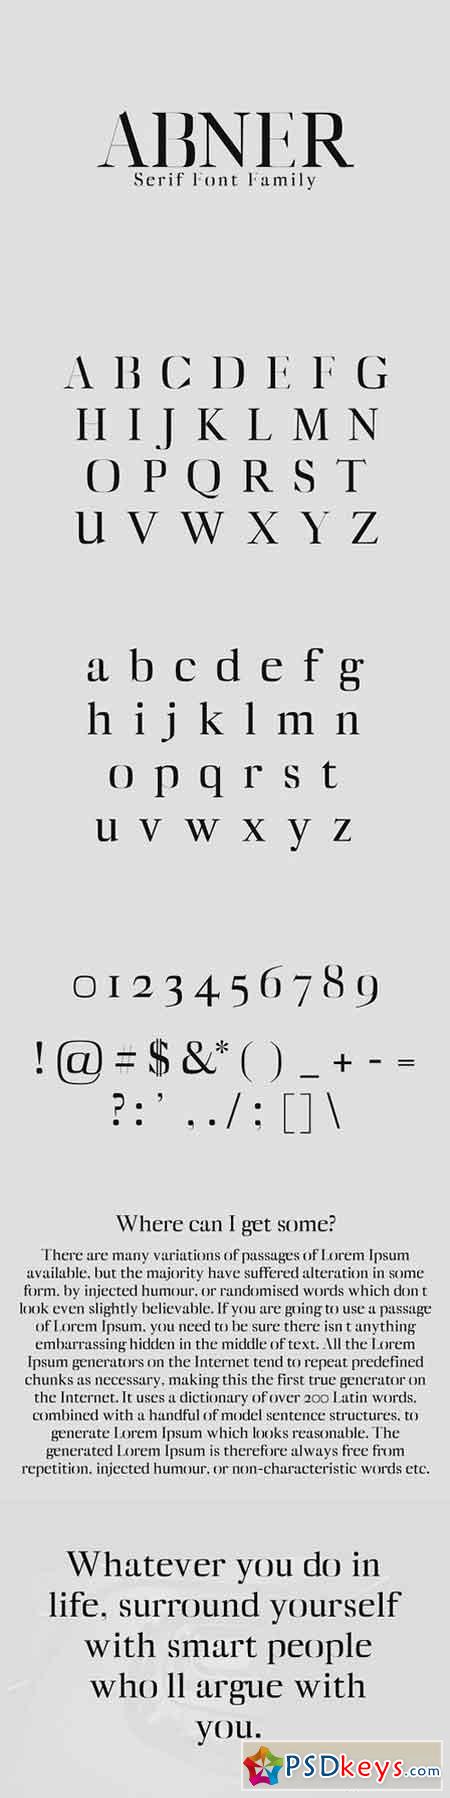 Abner Serif Font Family 1408311